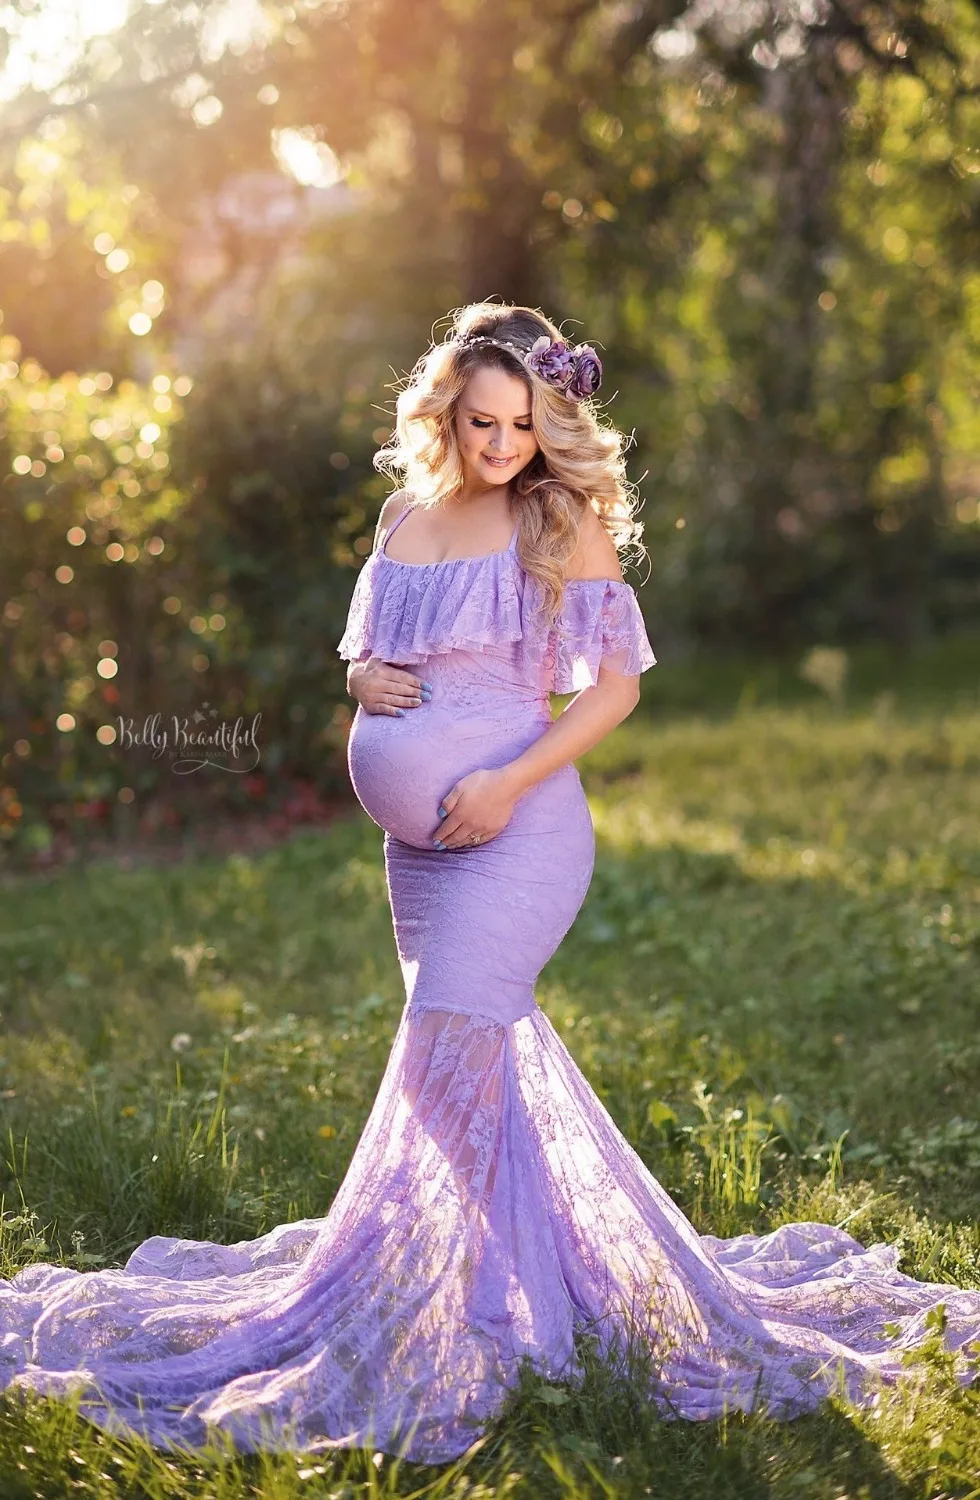 SMDPPWDBB средства ухода за кожей для будущих мам реквизит беременность кружево с открытыми плечами платье стрельба фото